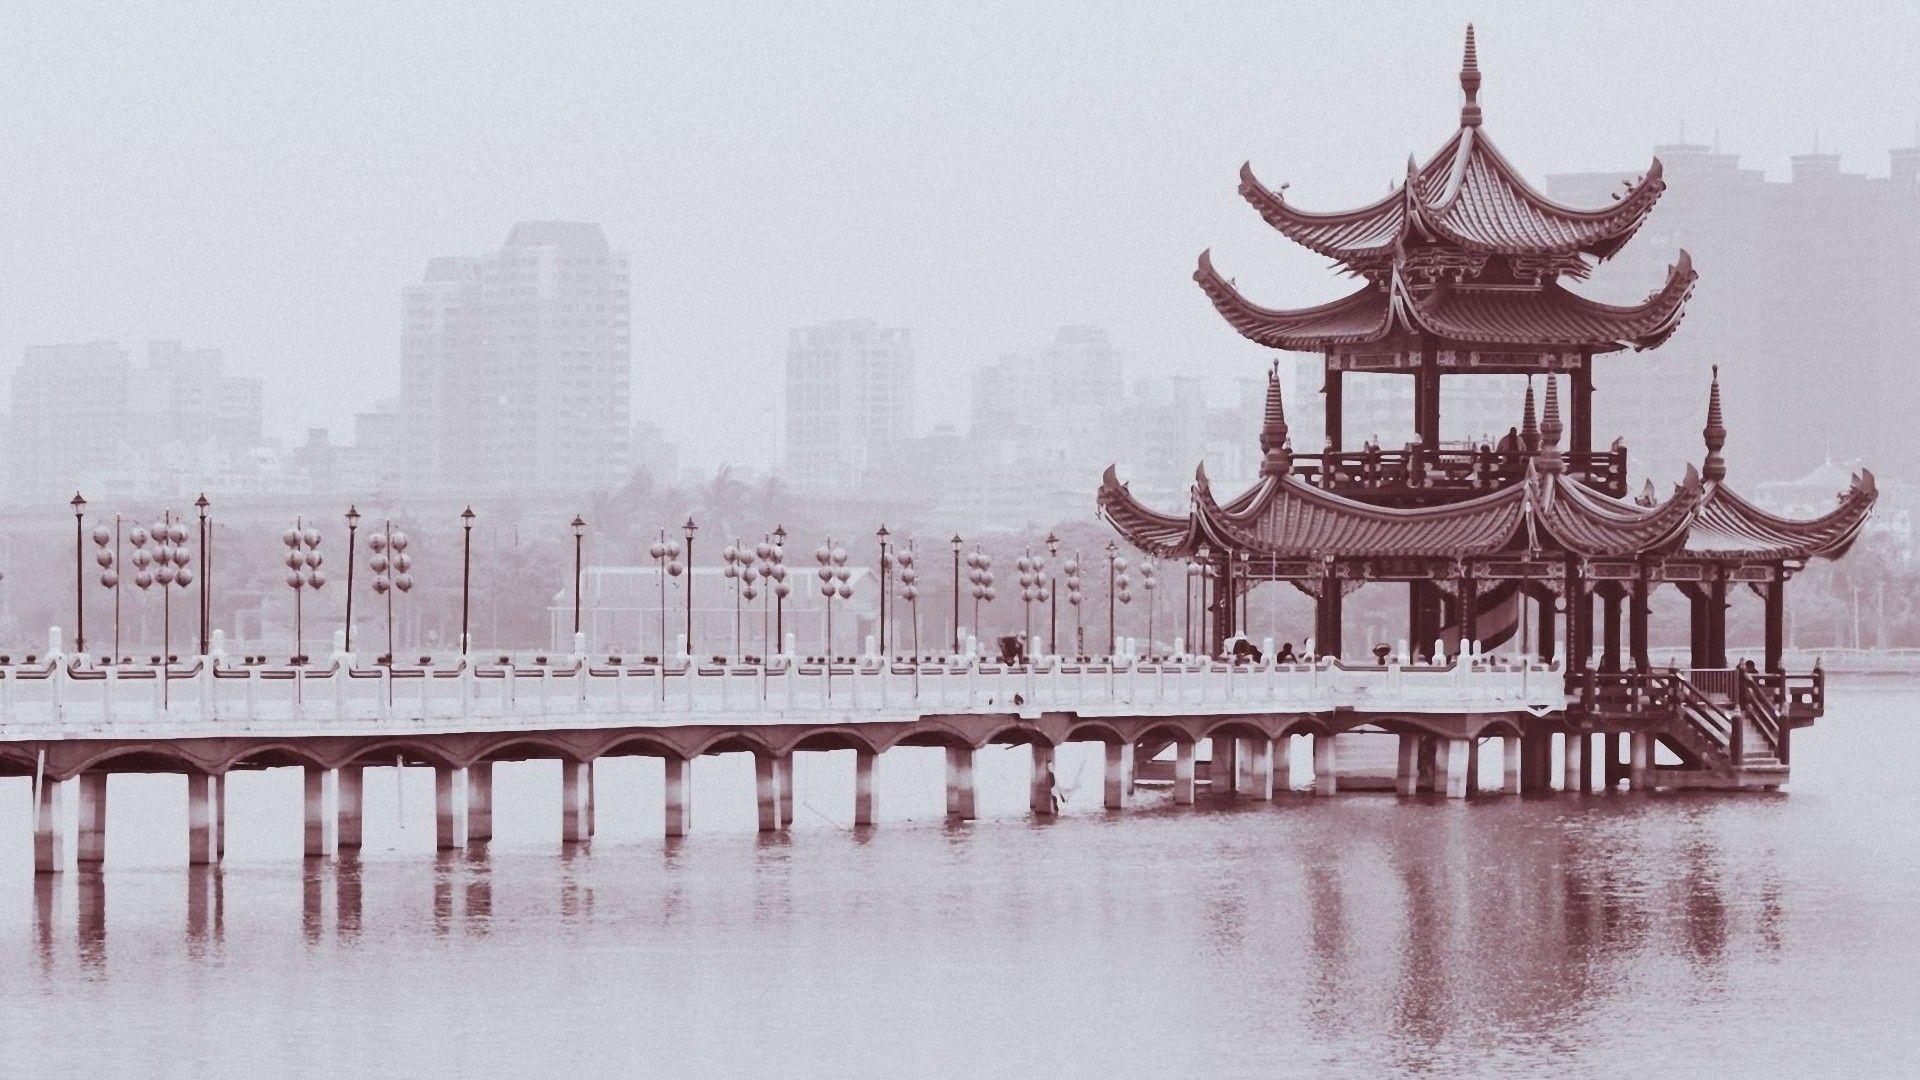 1920x1080 Đơn sắc Trung Quốc 1920x1080 hình nền Thiết kế các tòa nhà cầu